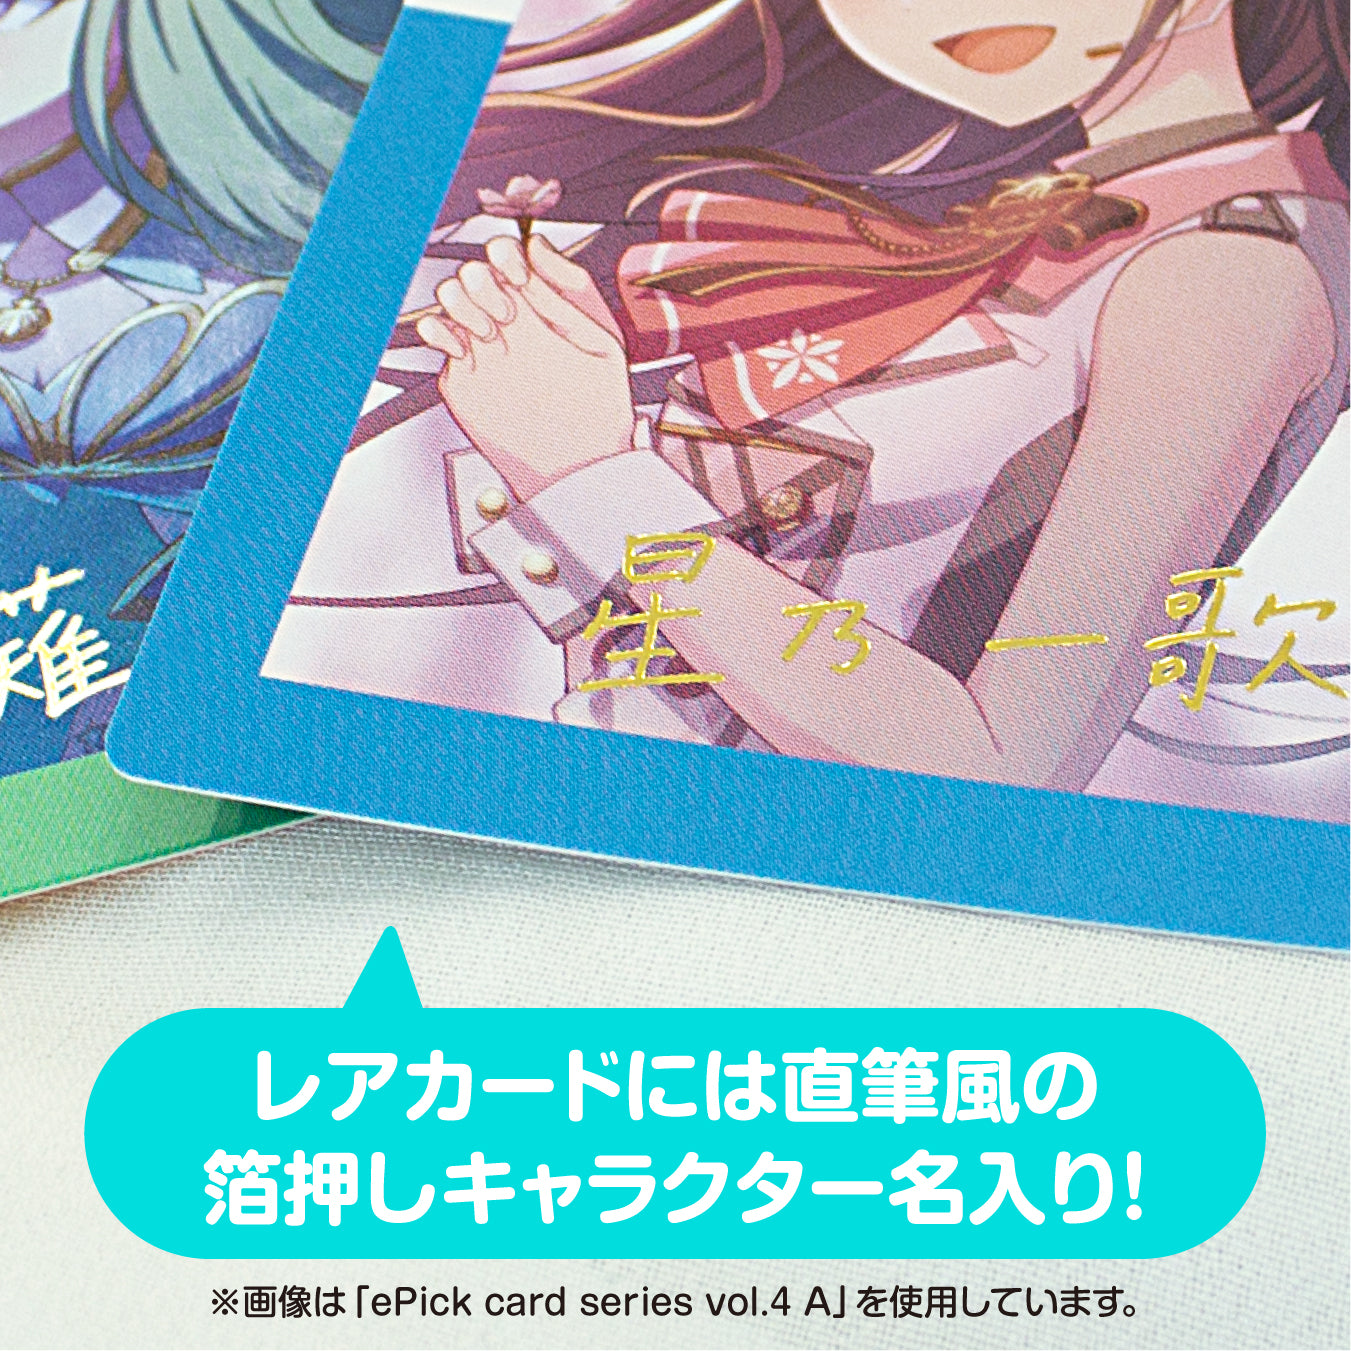 【予約商品】ePick card series vol.4 B BOX 特典付き［小豆沢 こはね］